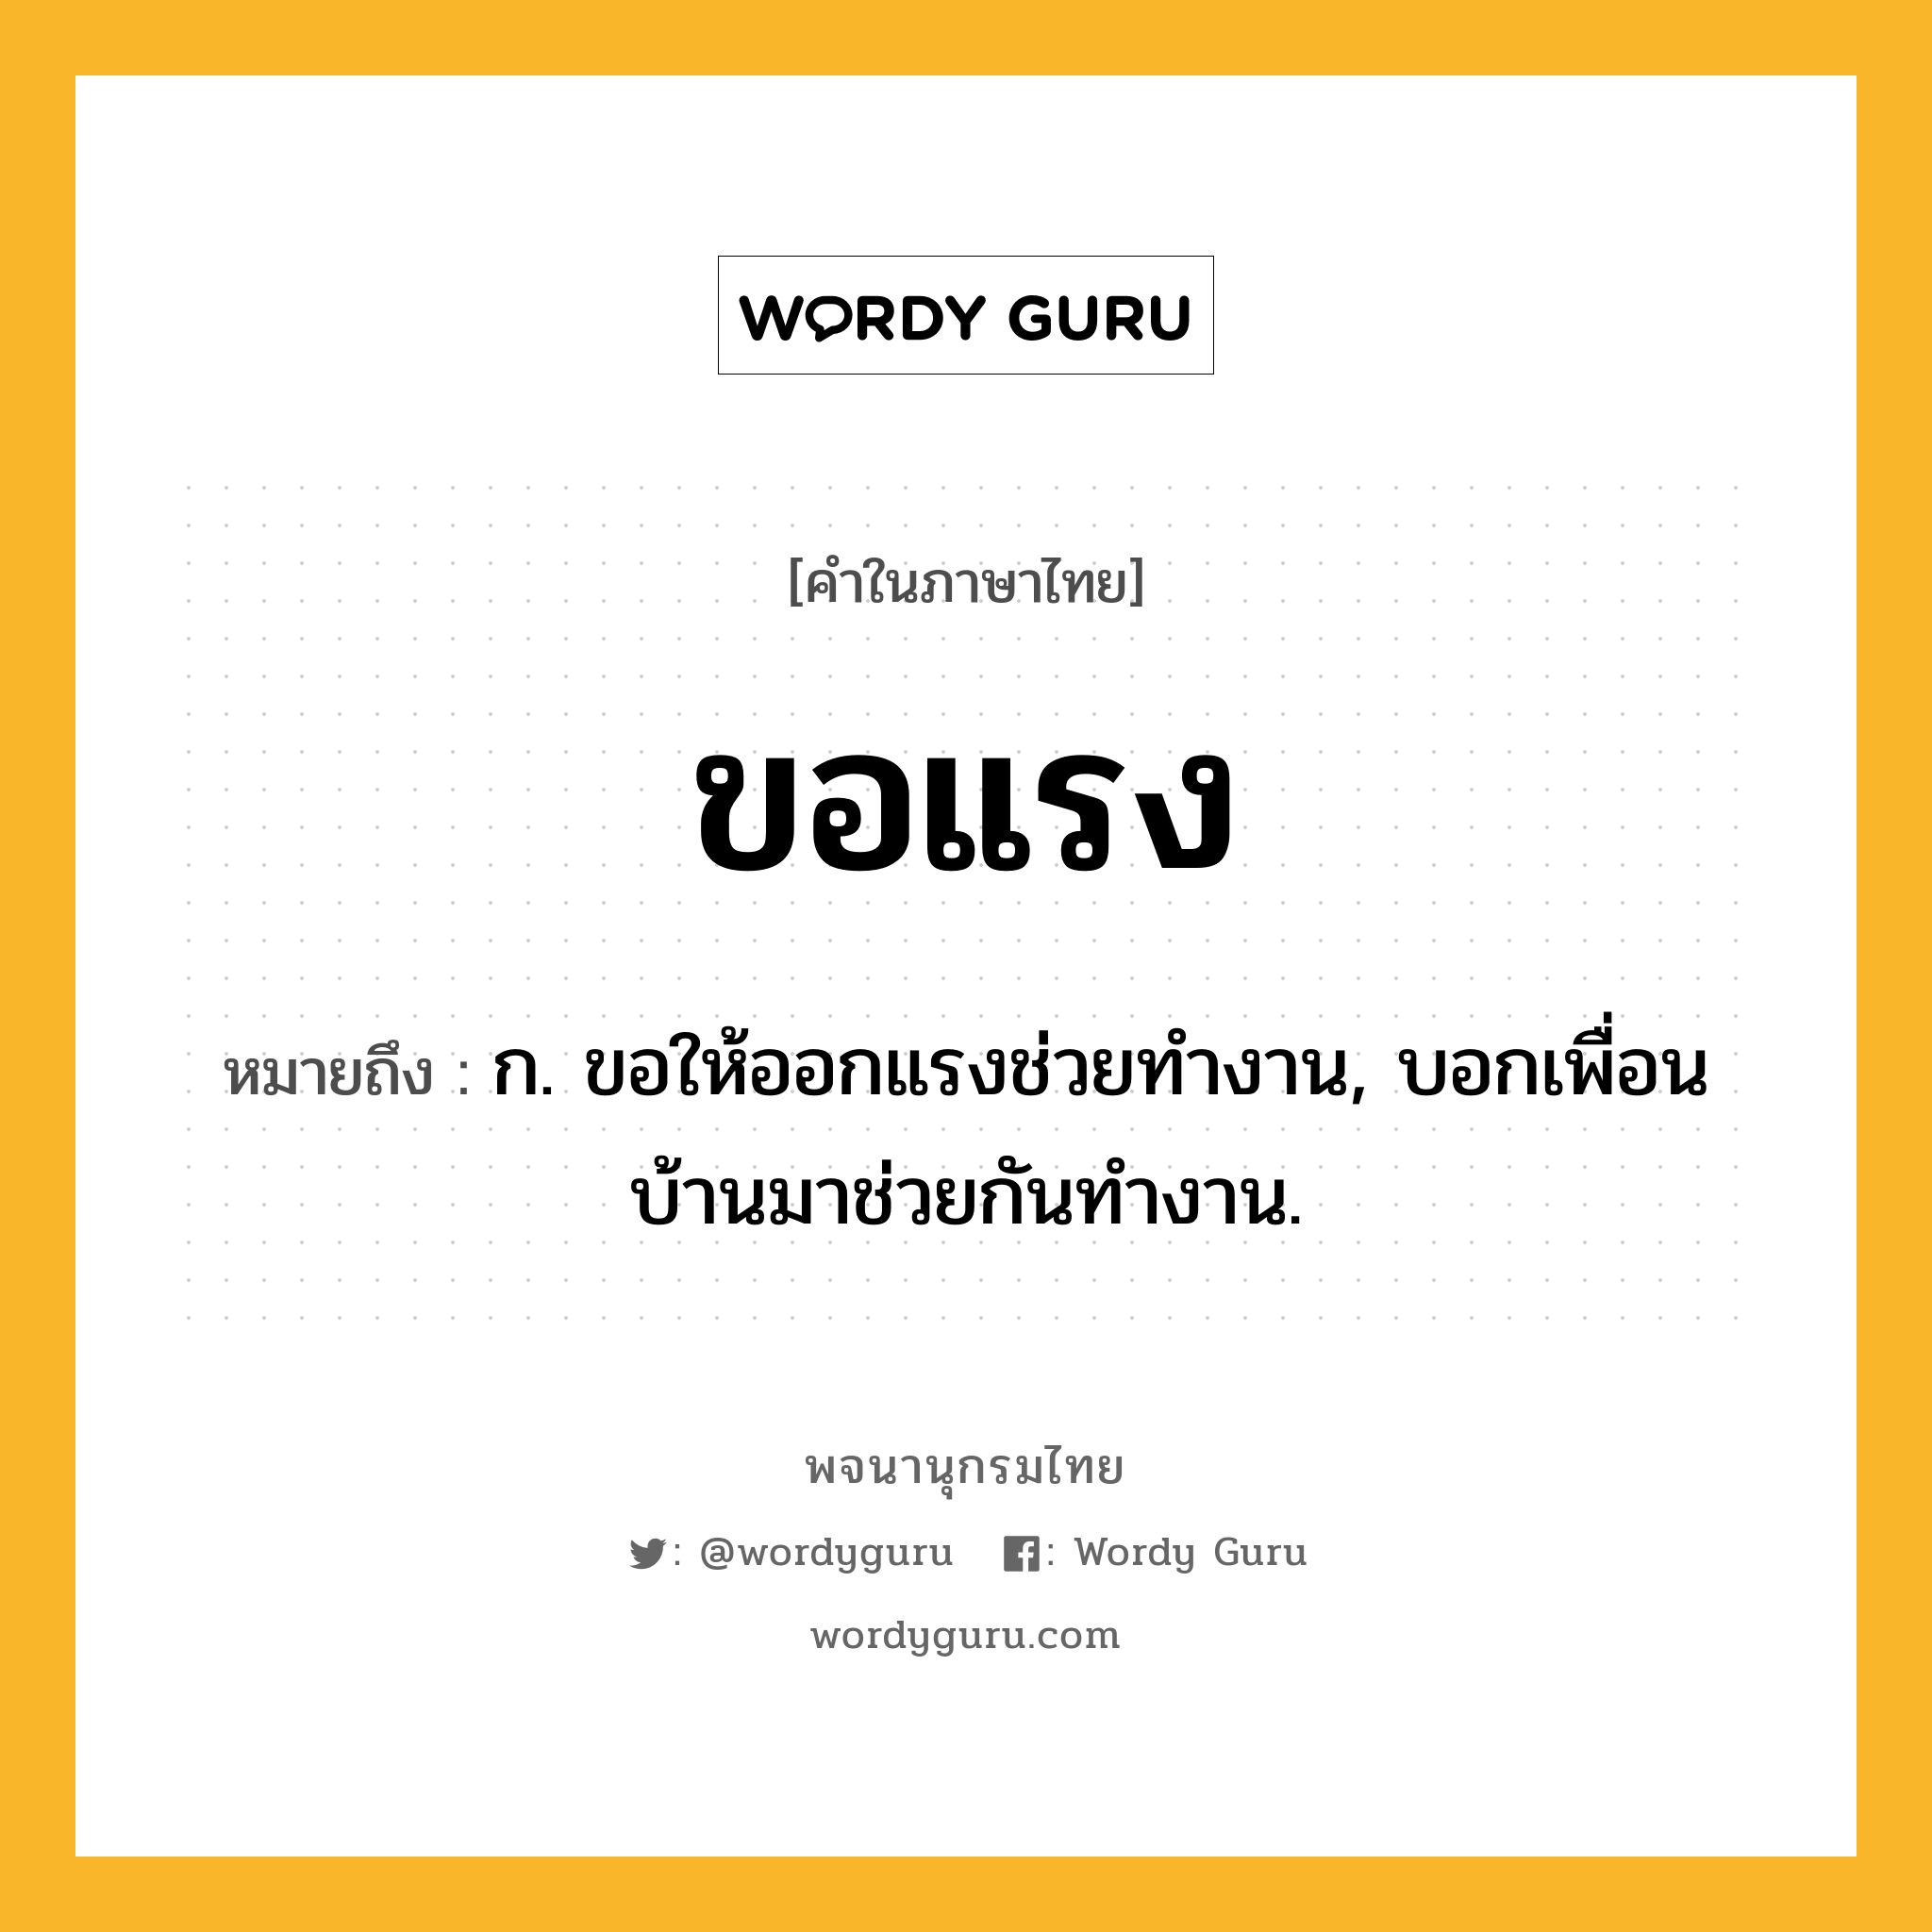 ขอแรง ความหมาย หมายถึงอะไร?, คำในภาษาไทย ขอแรง หมายถึง ก. ขอให้ออกแรงช่วยทำงาน, บอกเพื่อนบ้านมาช่วยกันทำงาน.